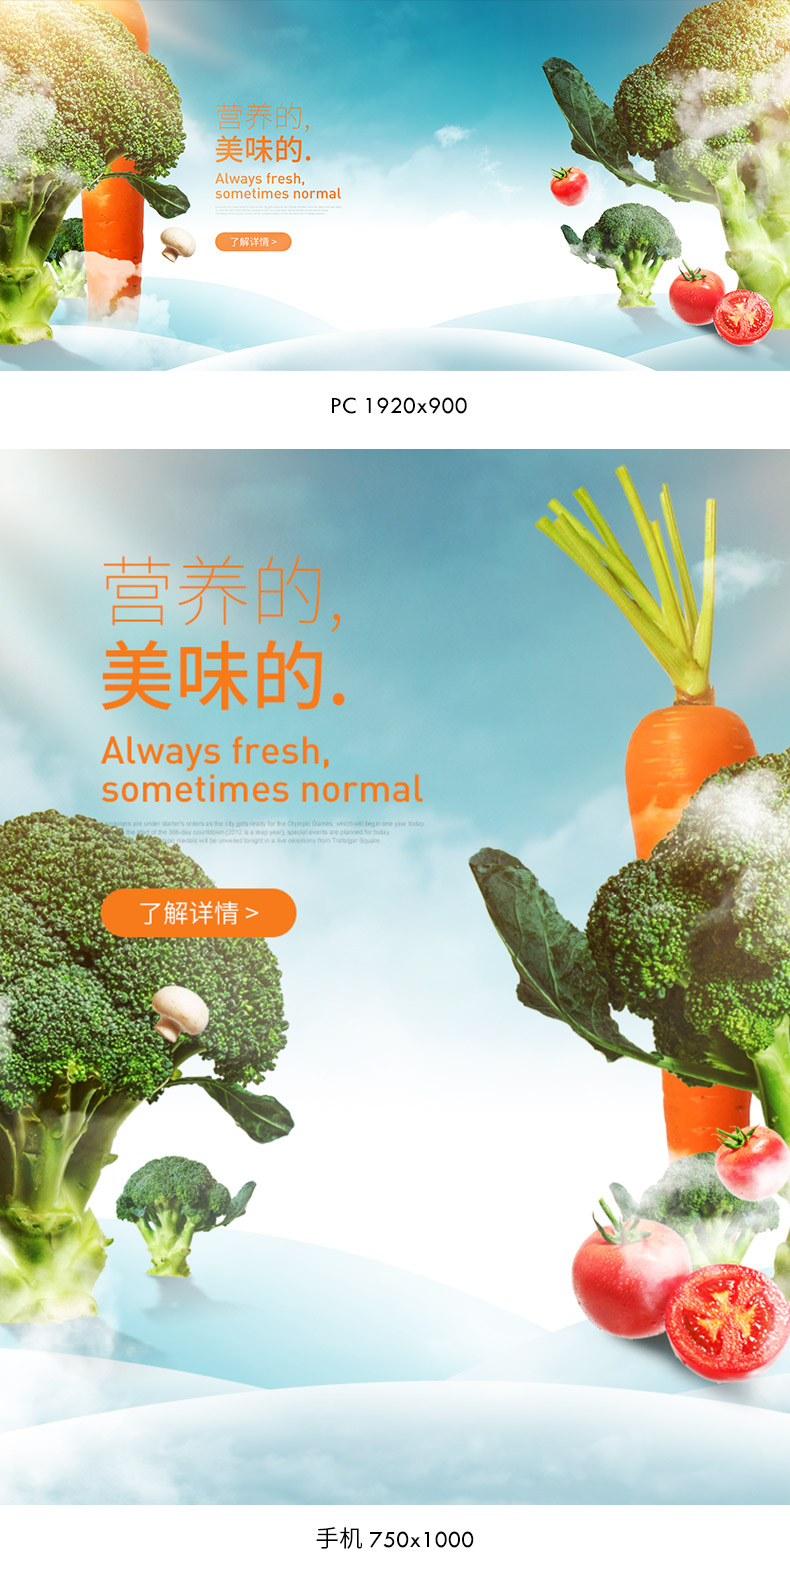 生鲜蔬菜海报,生鲜海报,蔬菜海报,食品海报,生鲜banner,蔬菜banner,蔬菜,蔬菜王国,